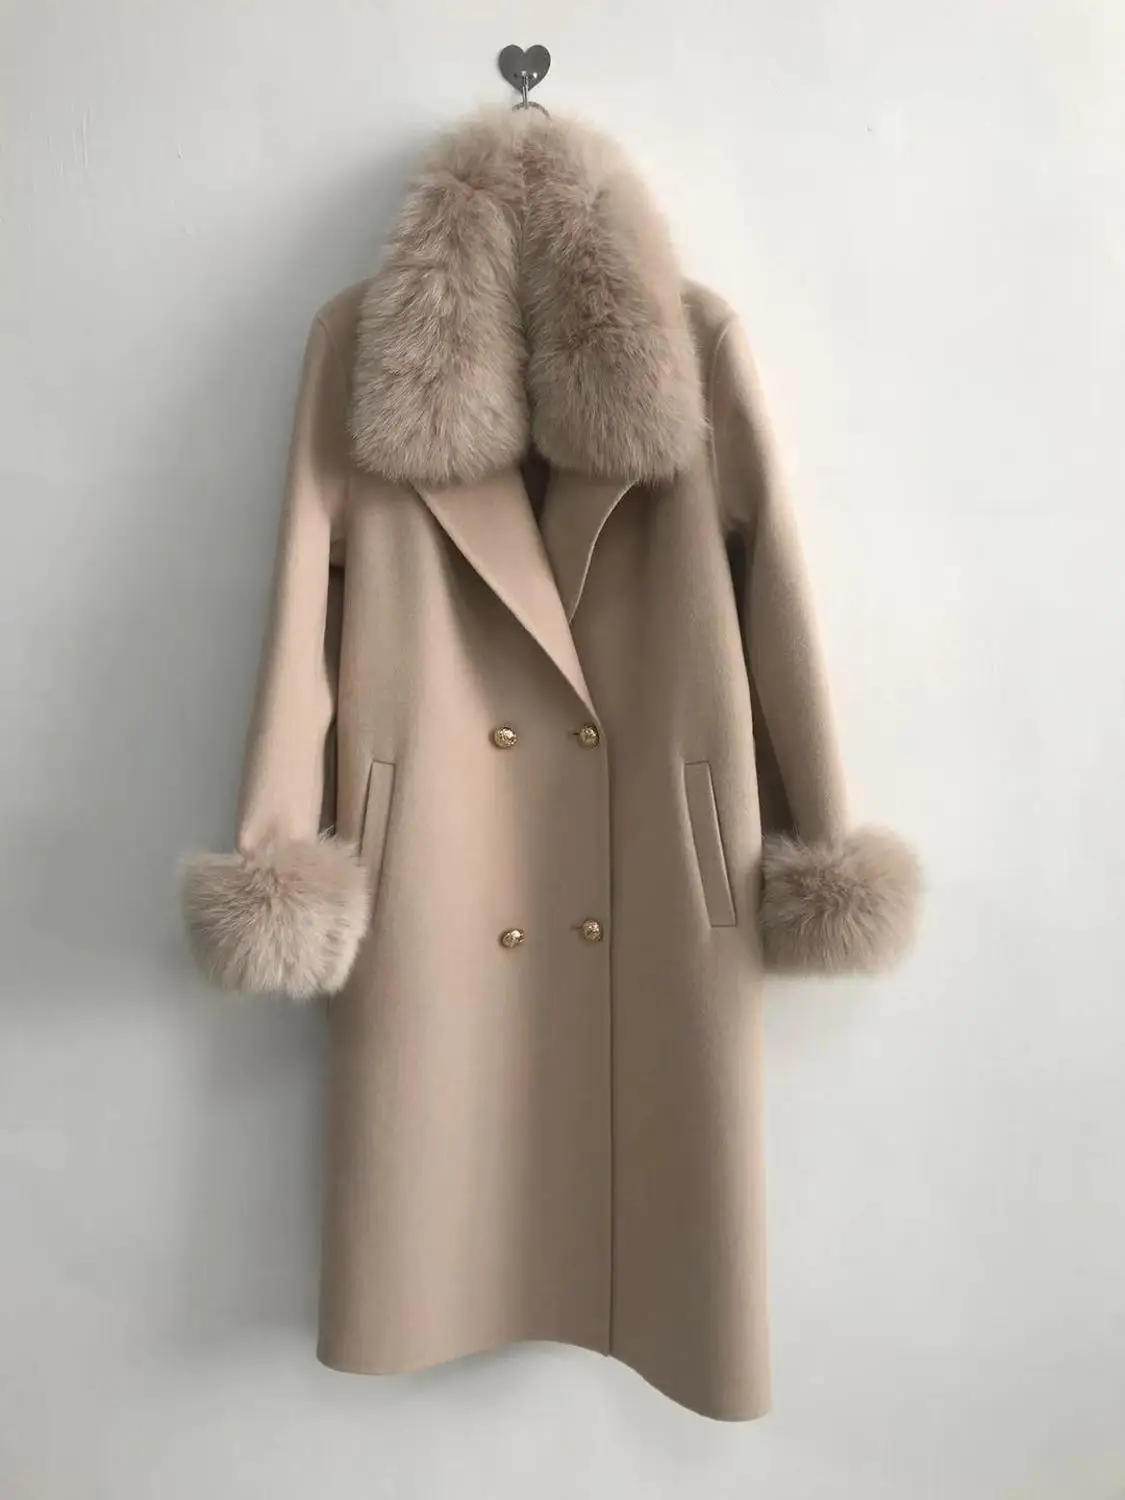 QIUCHEN PJ19100 Новое поступление Высококачественная кашемировая Женская куртка с воротником из натурального Лисьего меха и манжетами модная модель - Цвет: beige